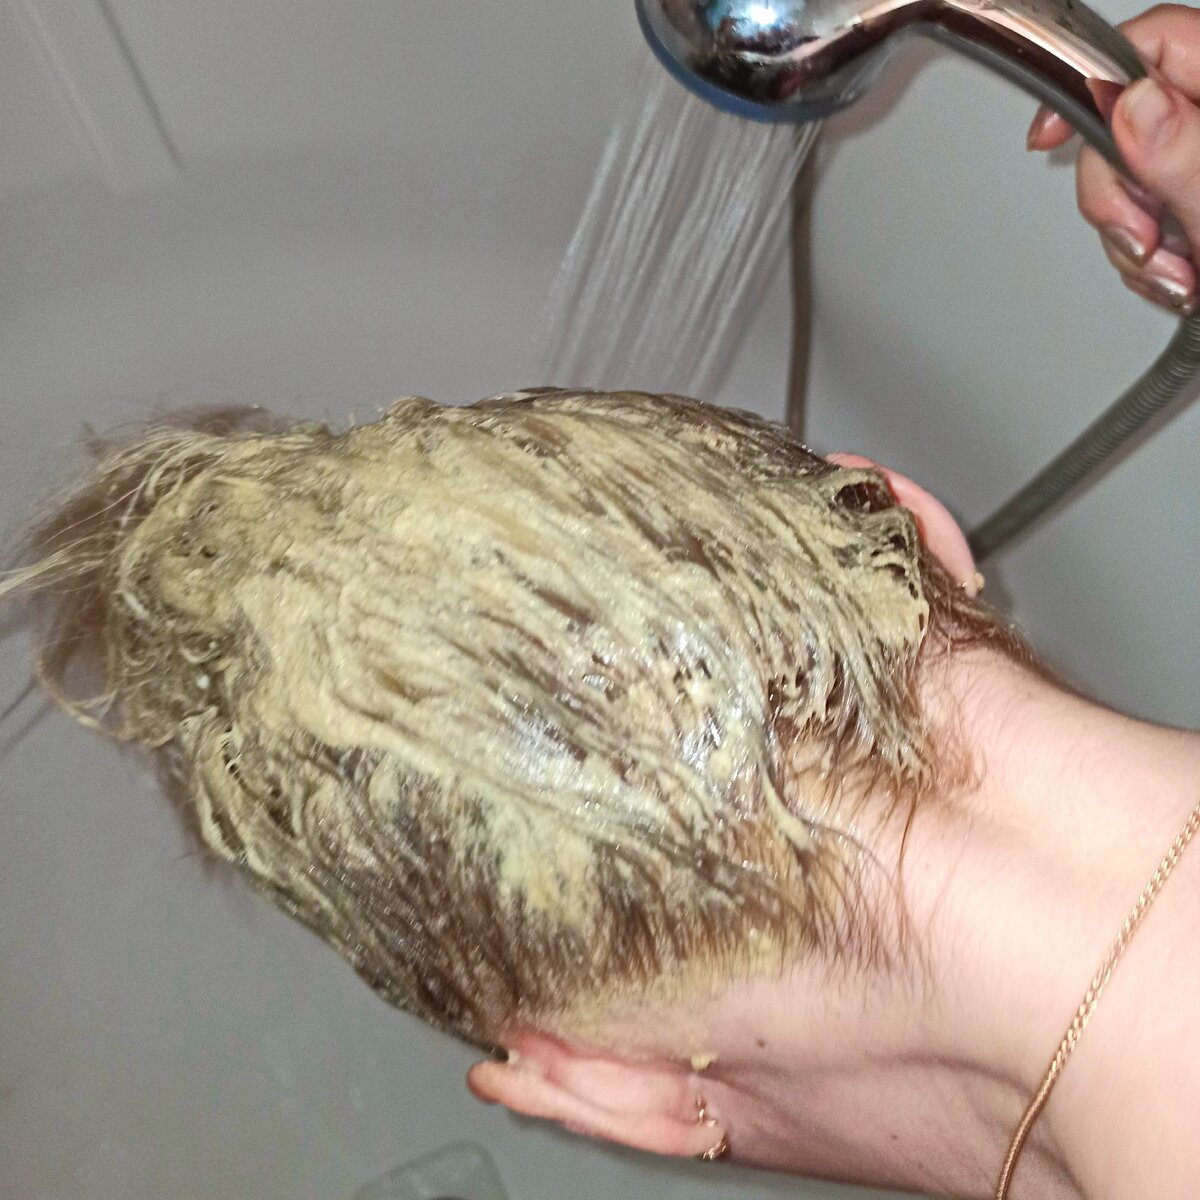 Жирные волосы после мытья что делать. Волосы в муке. Мытье головы горчицей. Стрижка на сожженные волосы. Потные волосы.